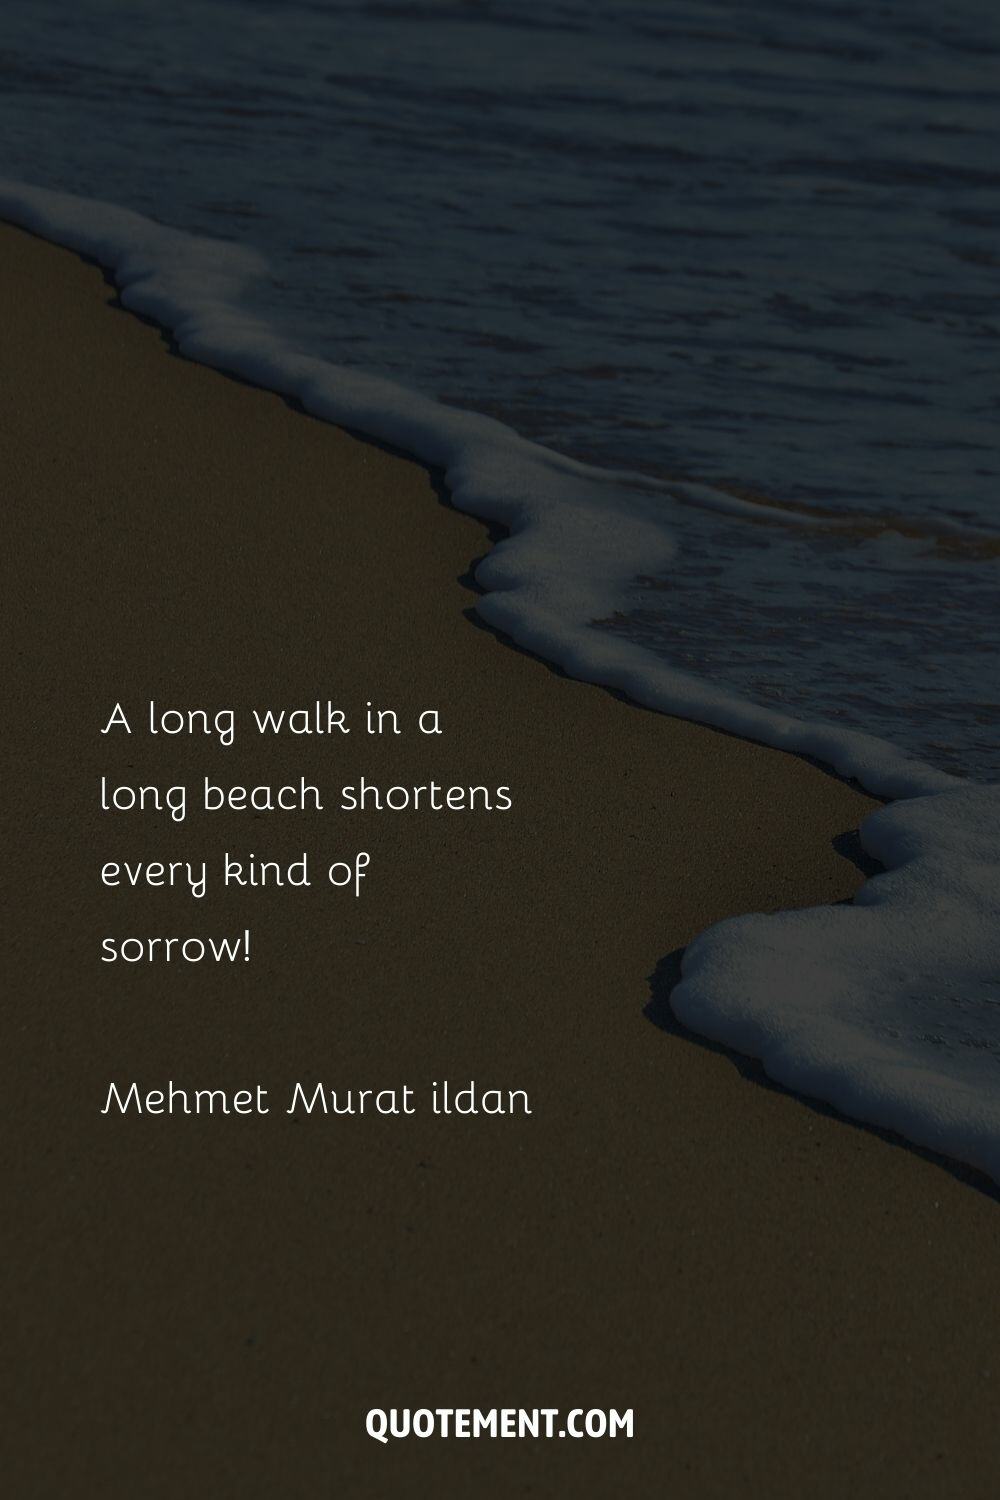 A long walk in a long beach shortens every kind of sorrow! – Mehmet Murat ildan